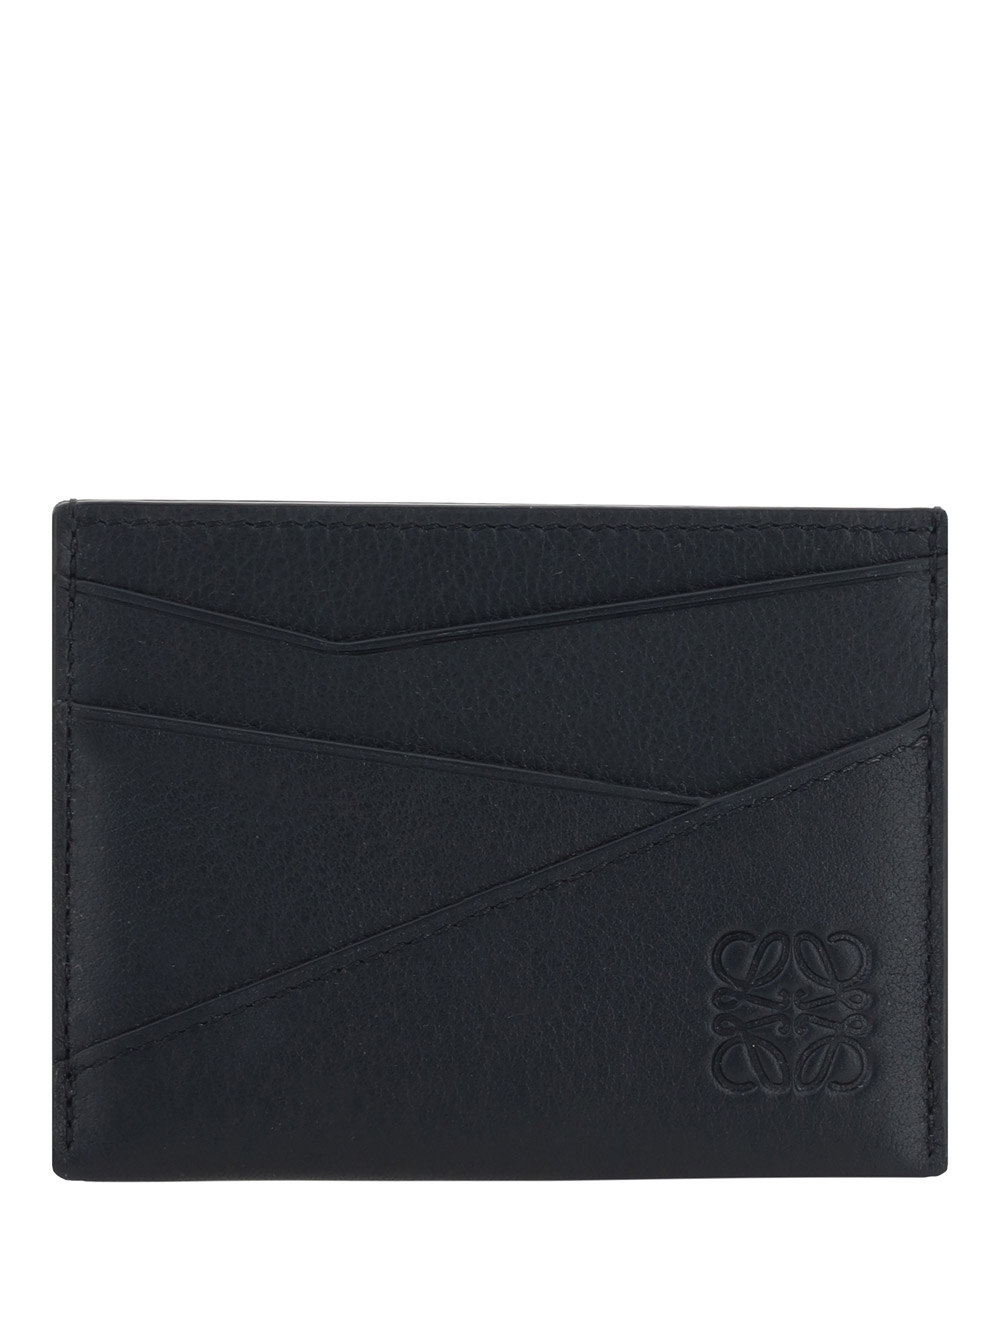 Loewe Puzzle Card Case In Black